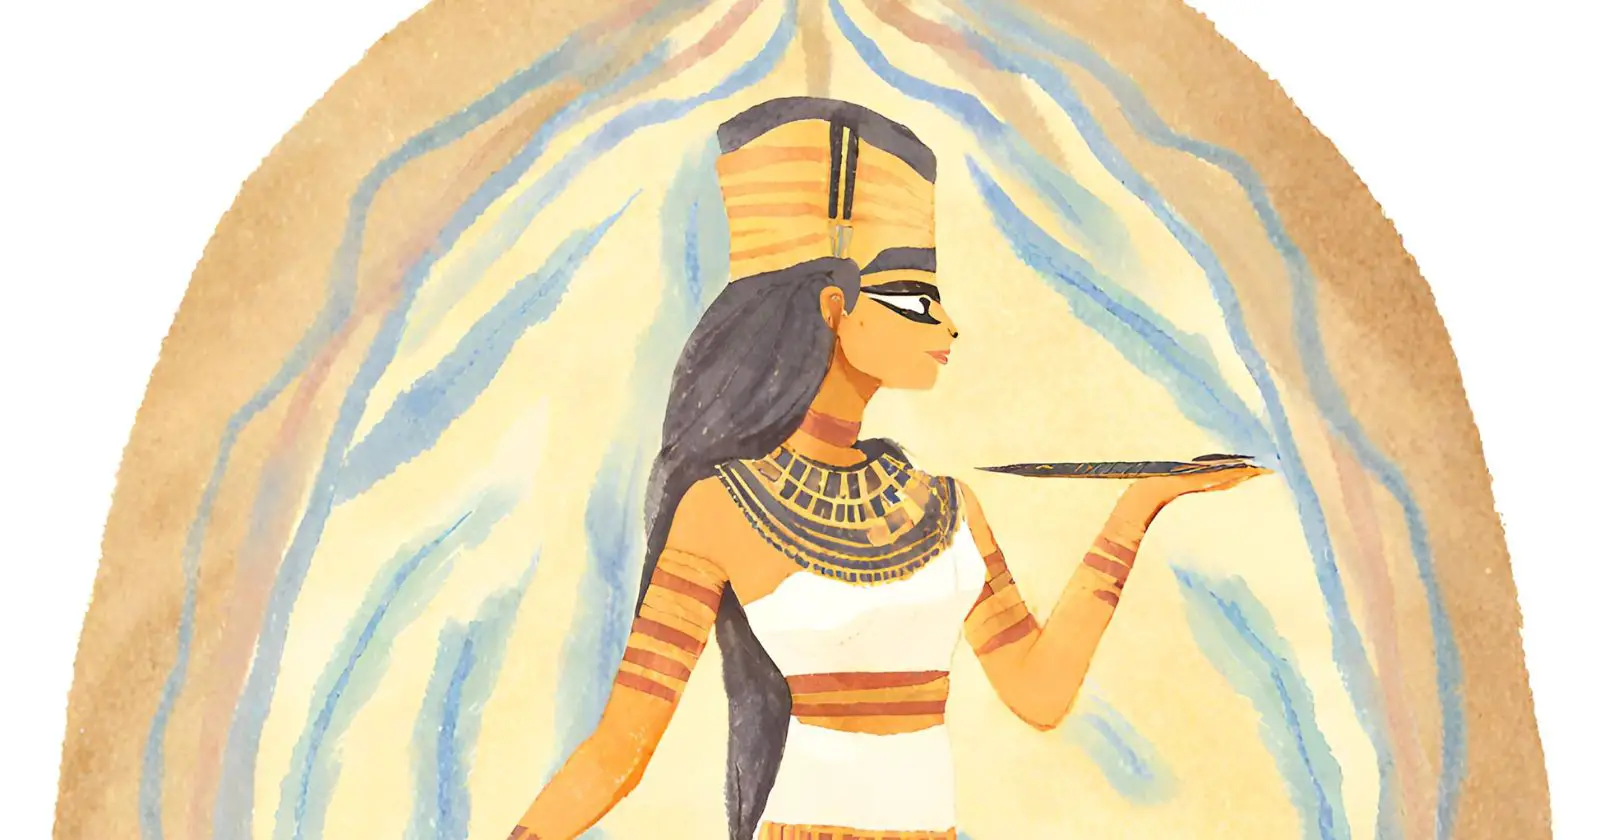 Neith A Deusa Egípcia da Tecelagem